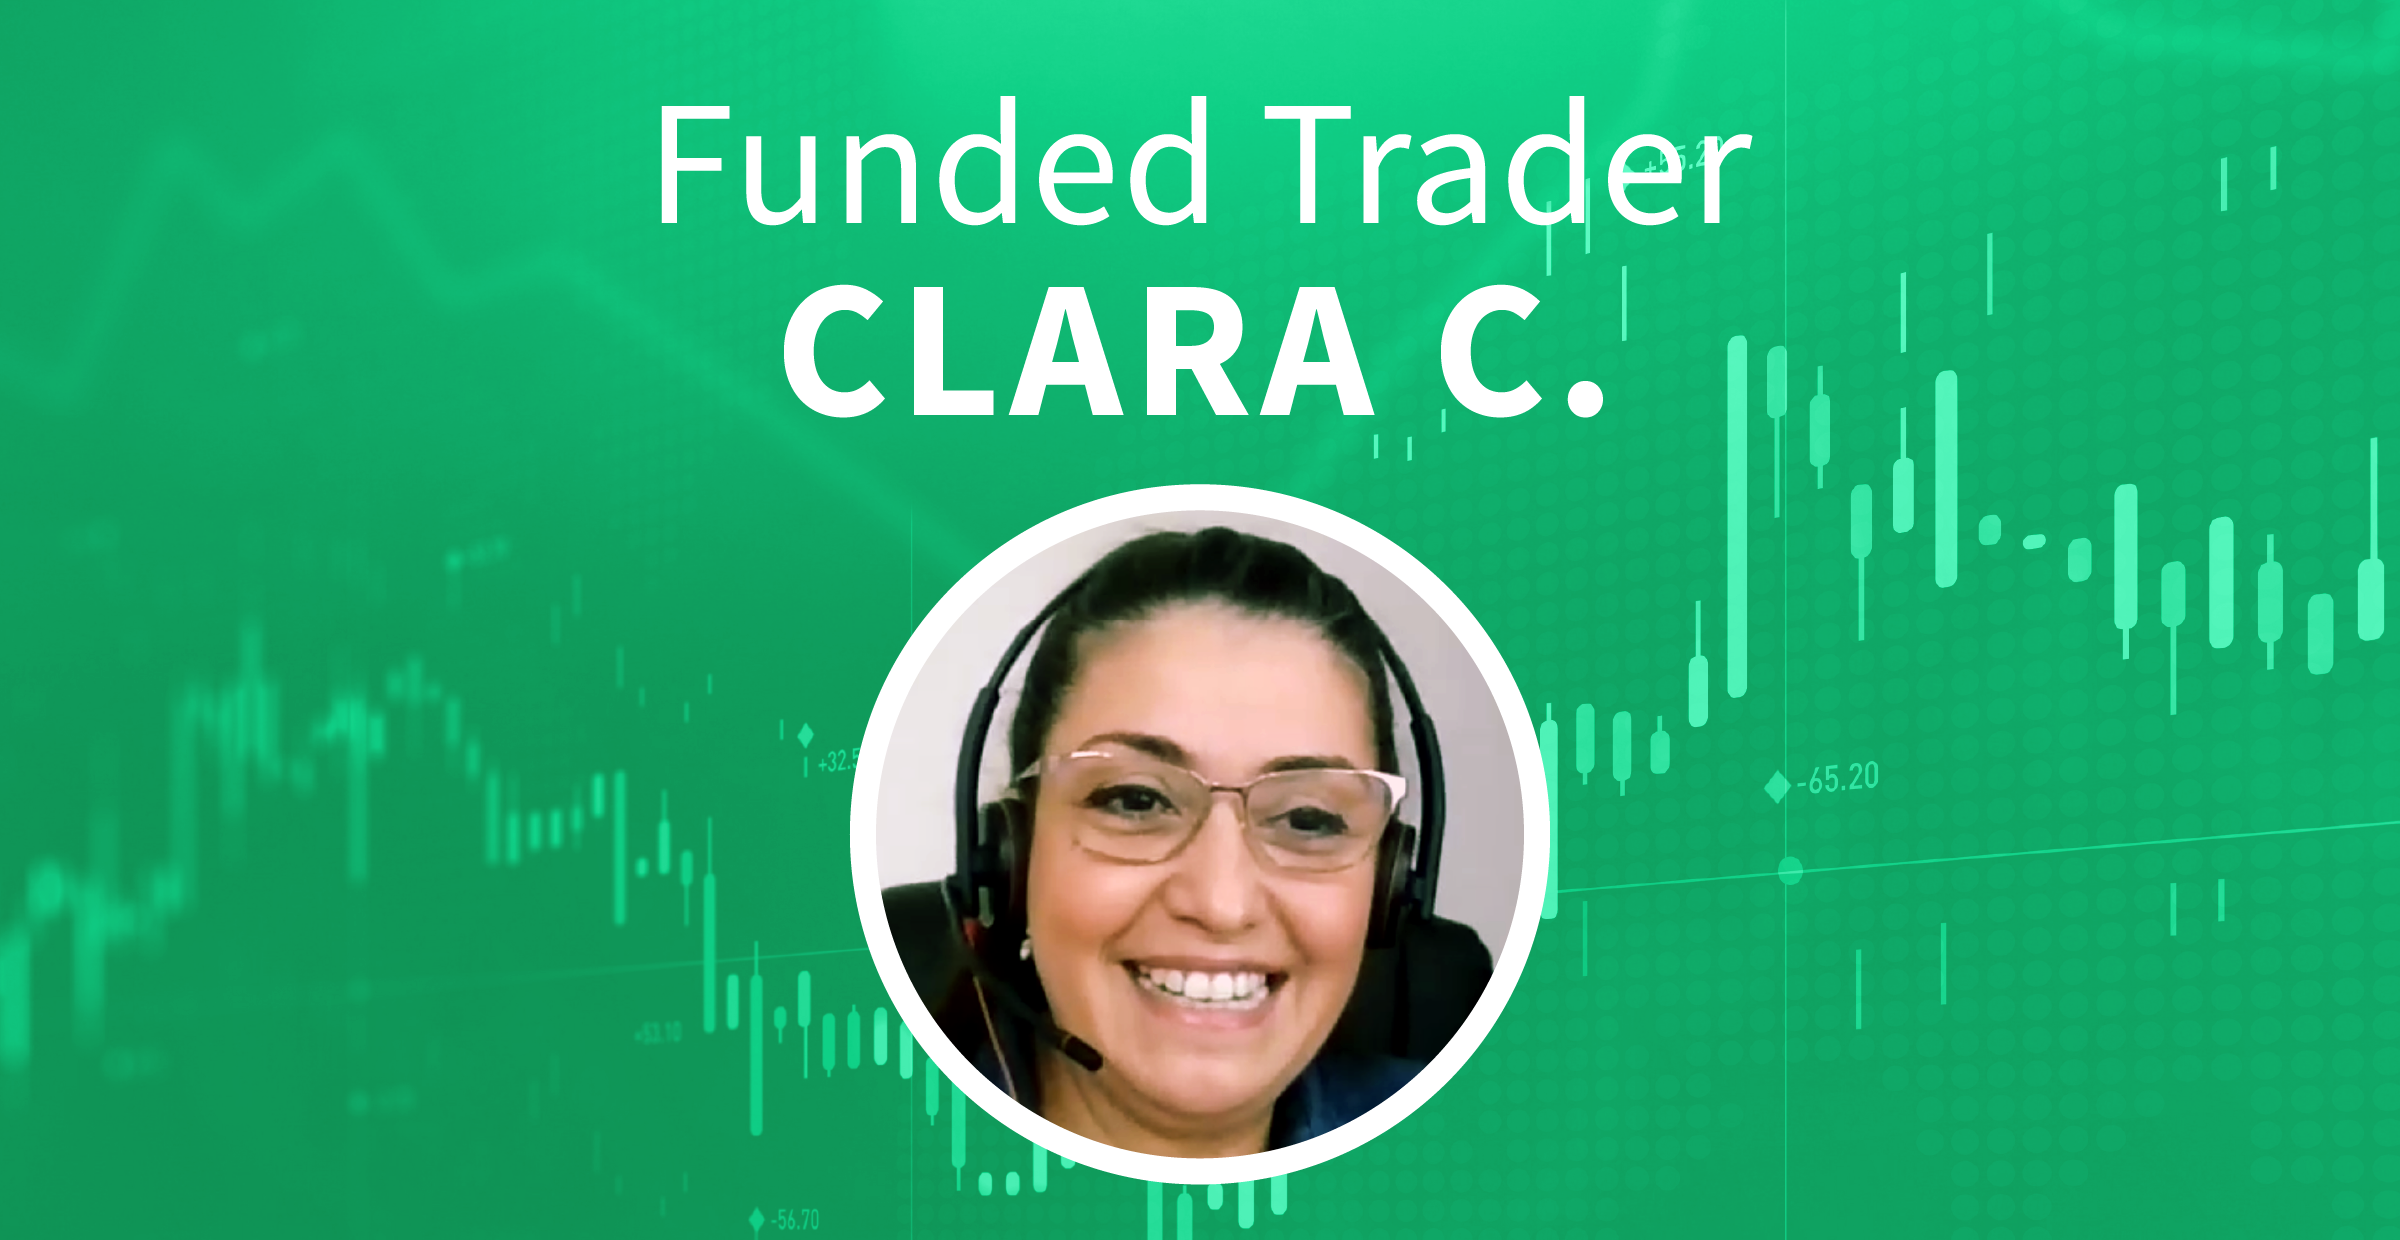 Clara C from Houston Texas